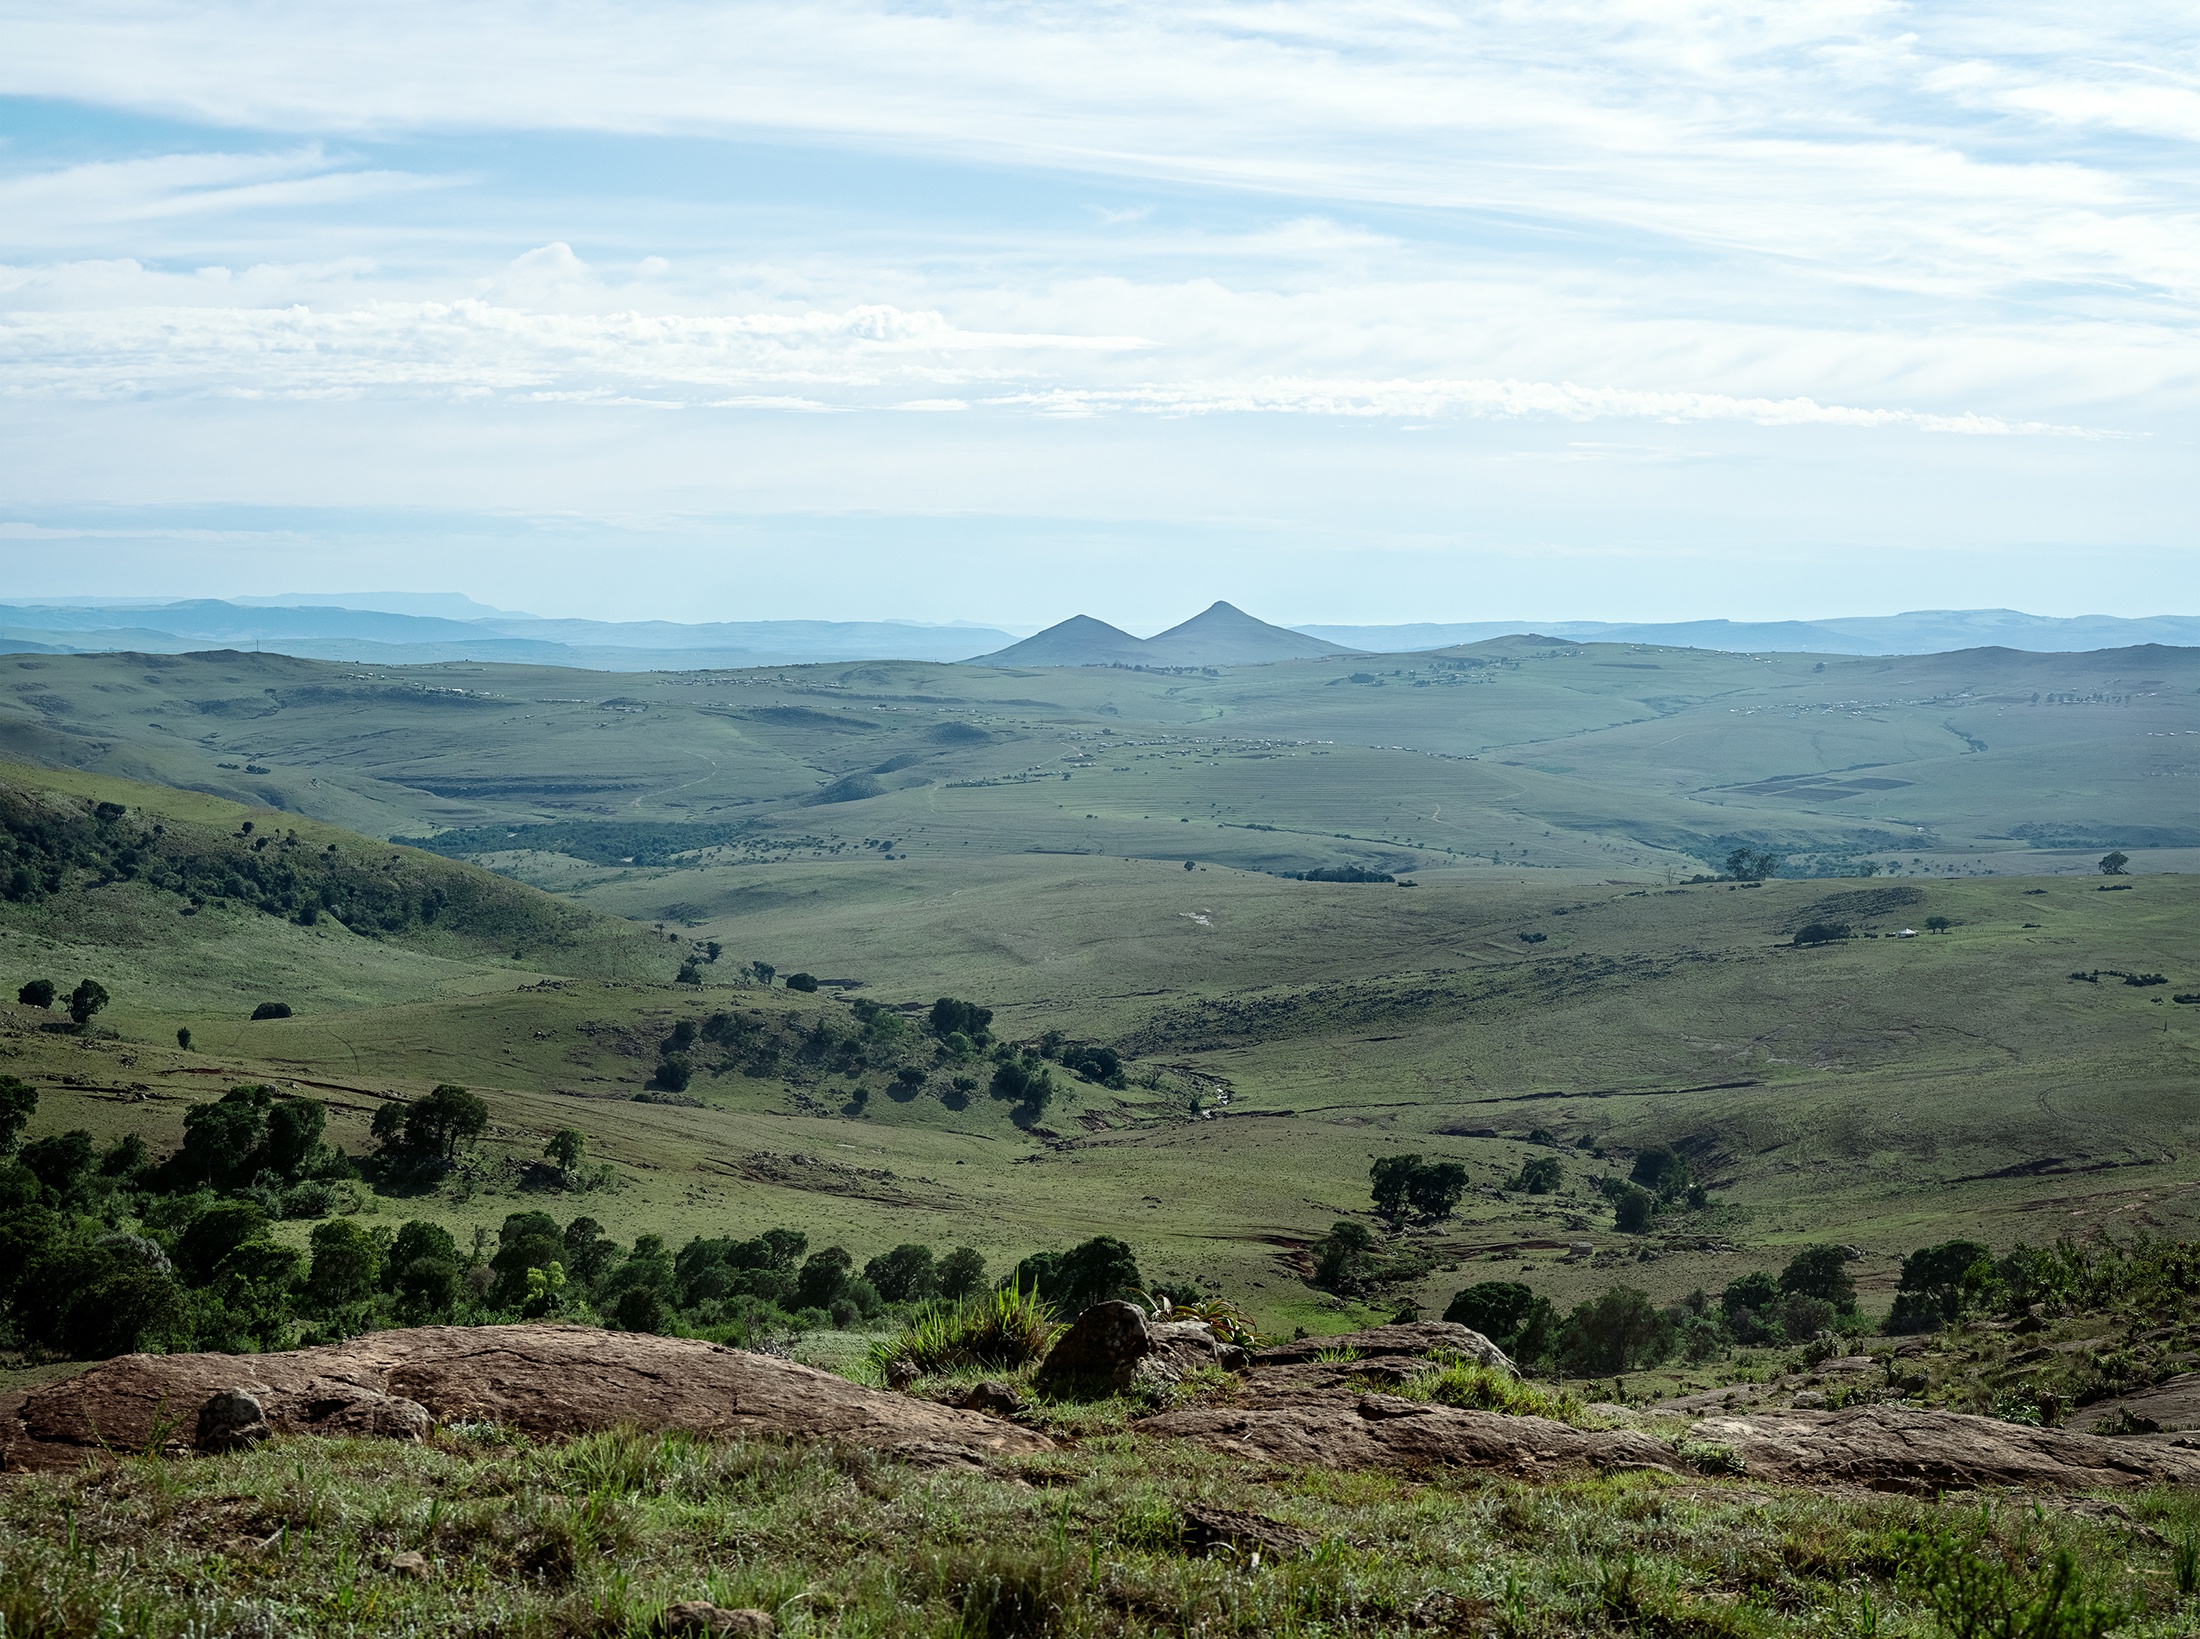 Lindokuhle Sobekwa's photograph 'Amabele weNtombi' shows a landscape of grassy hills.
